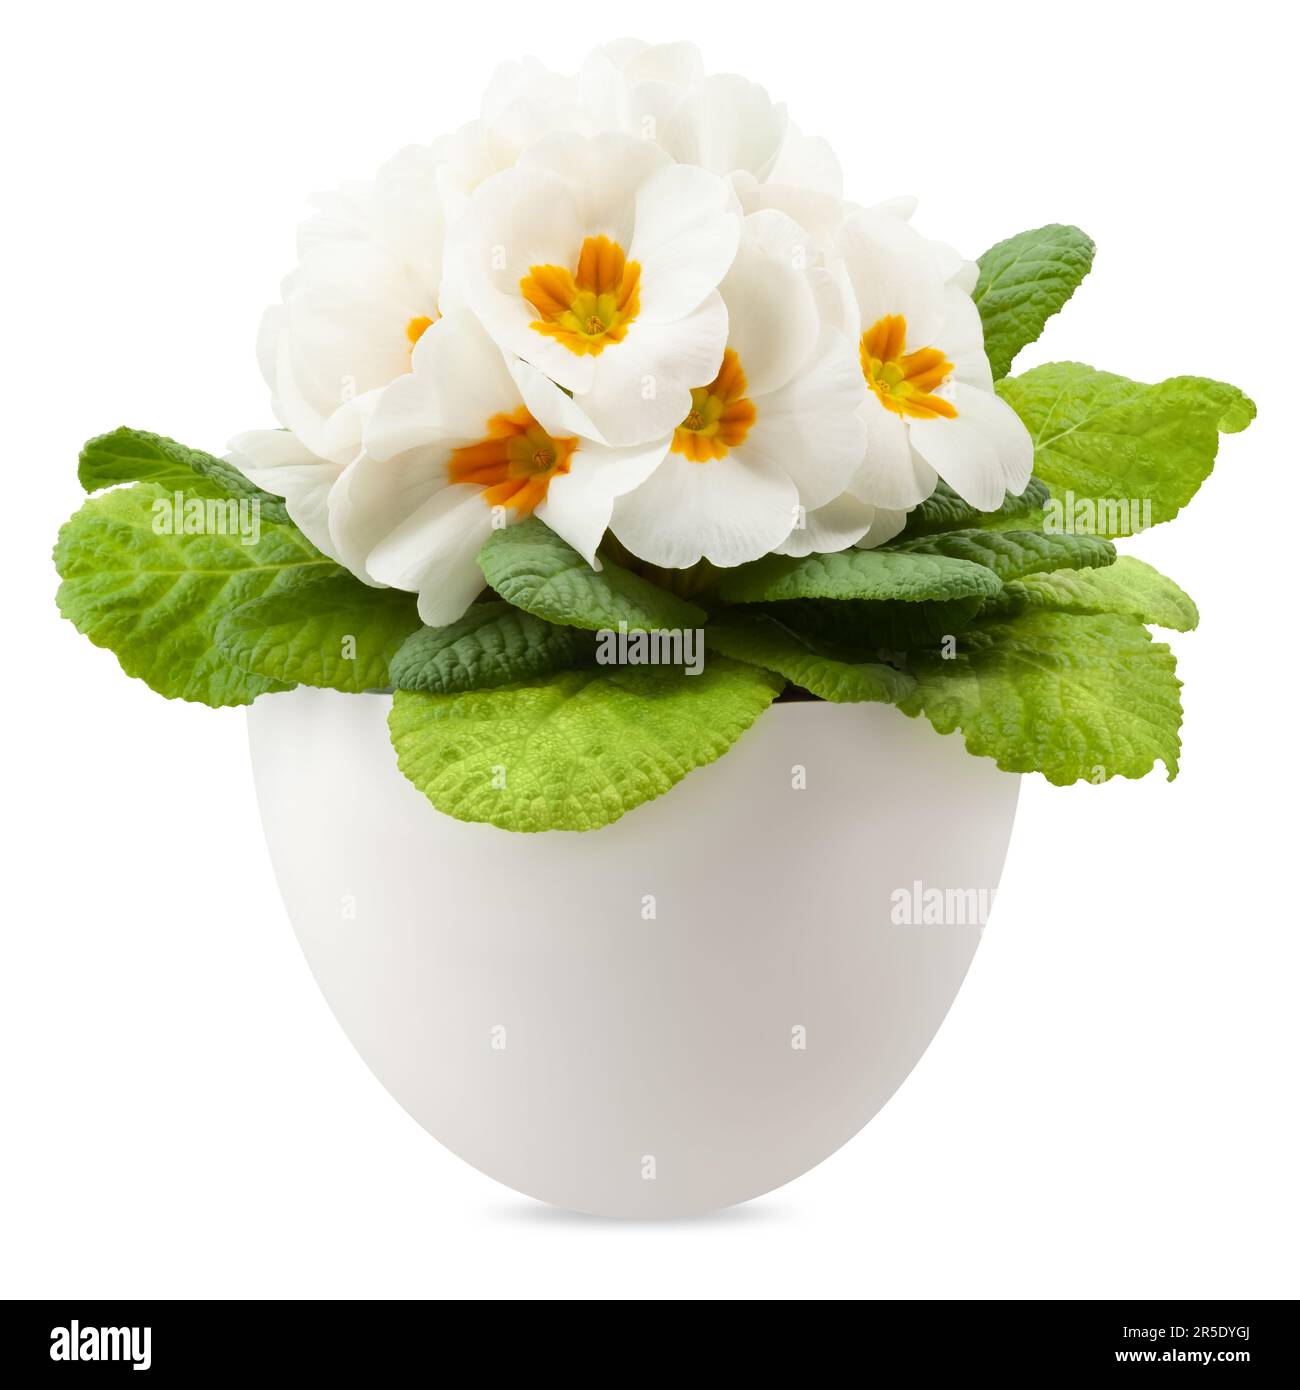 Printemps floraison de fleurs de primroses blanches dans le pot, vue de face rapprochée isolée sur fond blanc avec chemin de coupure Banque D'Images